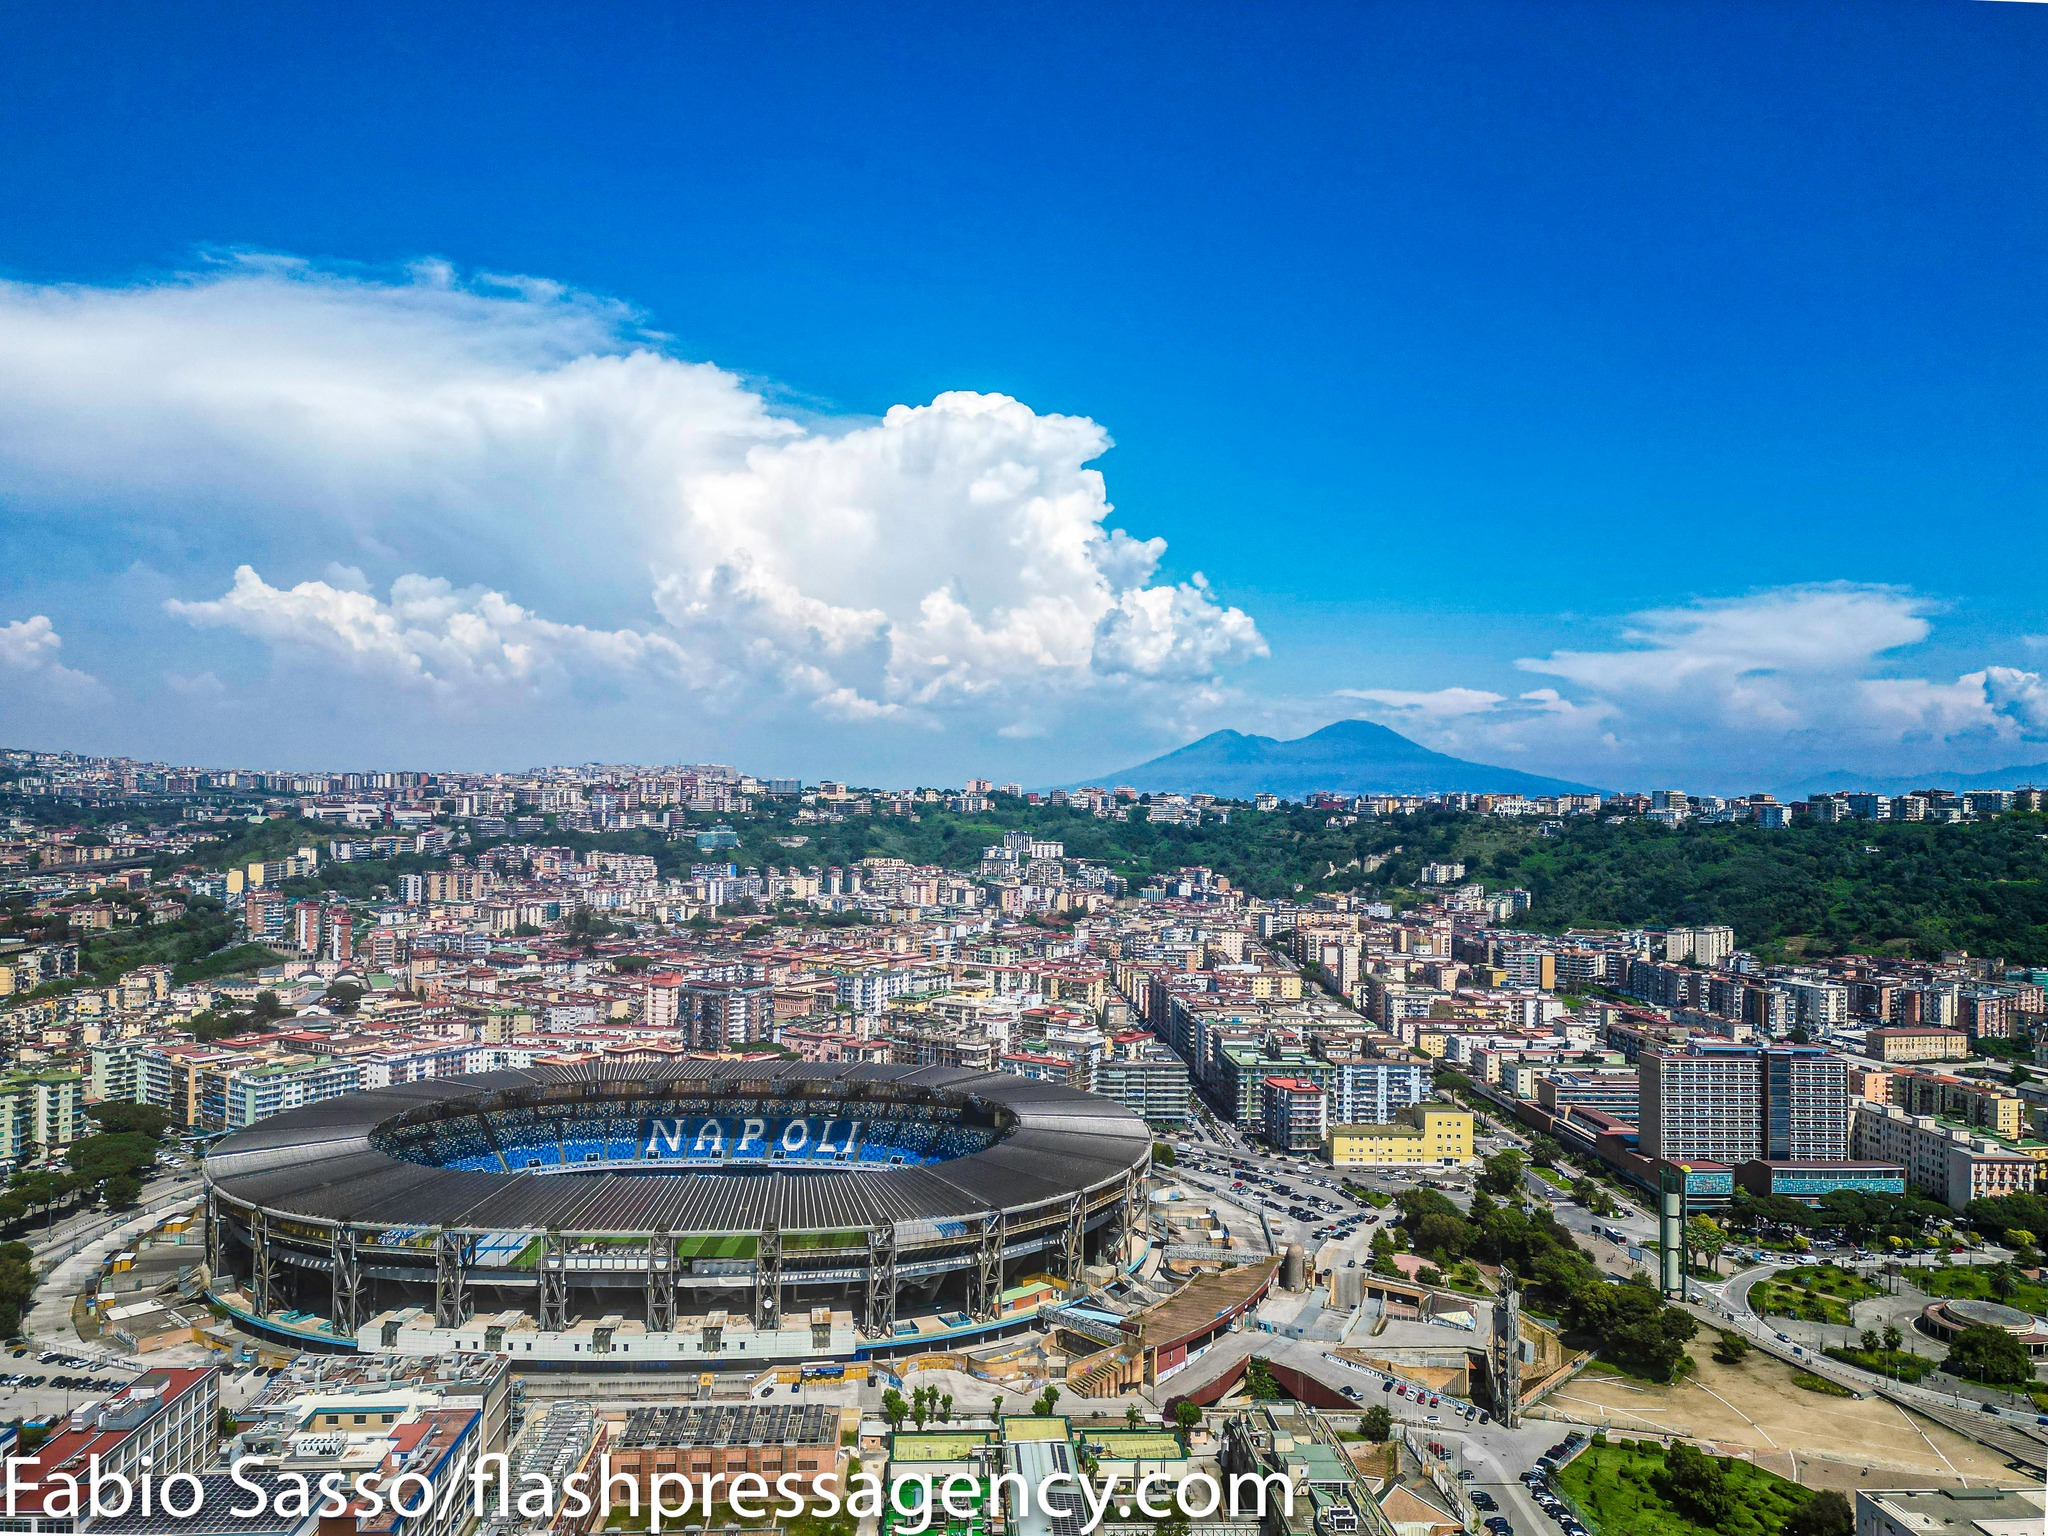 Napoli in finale per la candidatura a Capitale Europea dello Sport 2026.